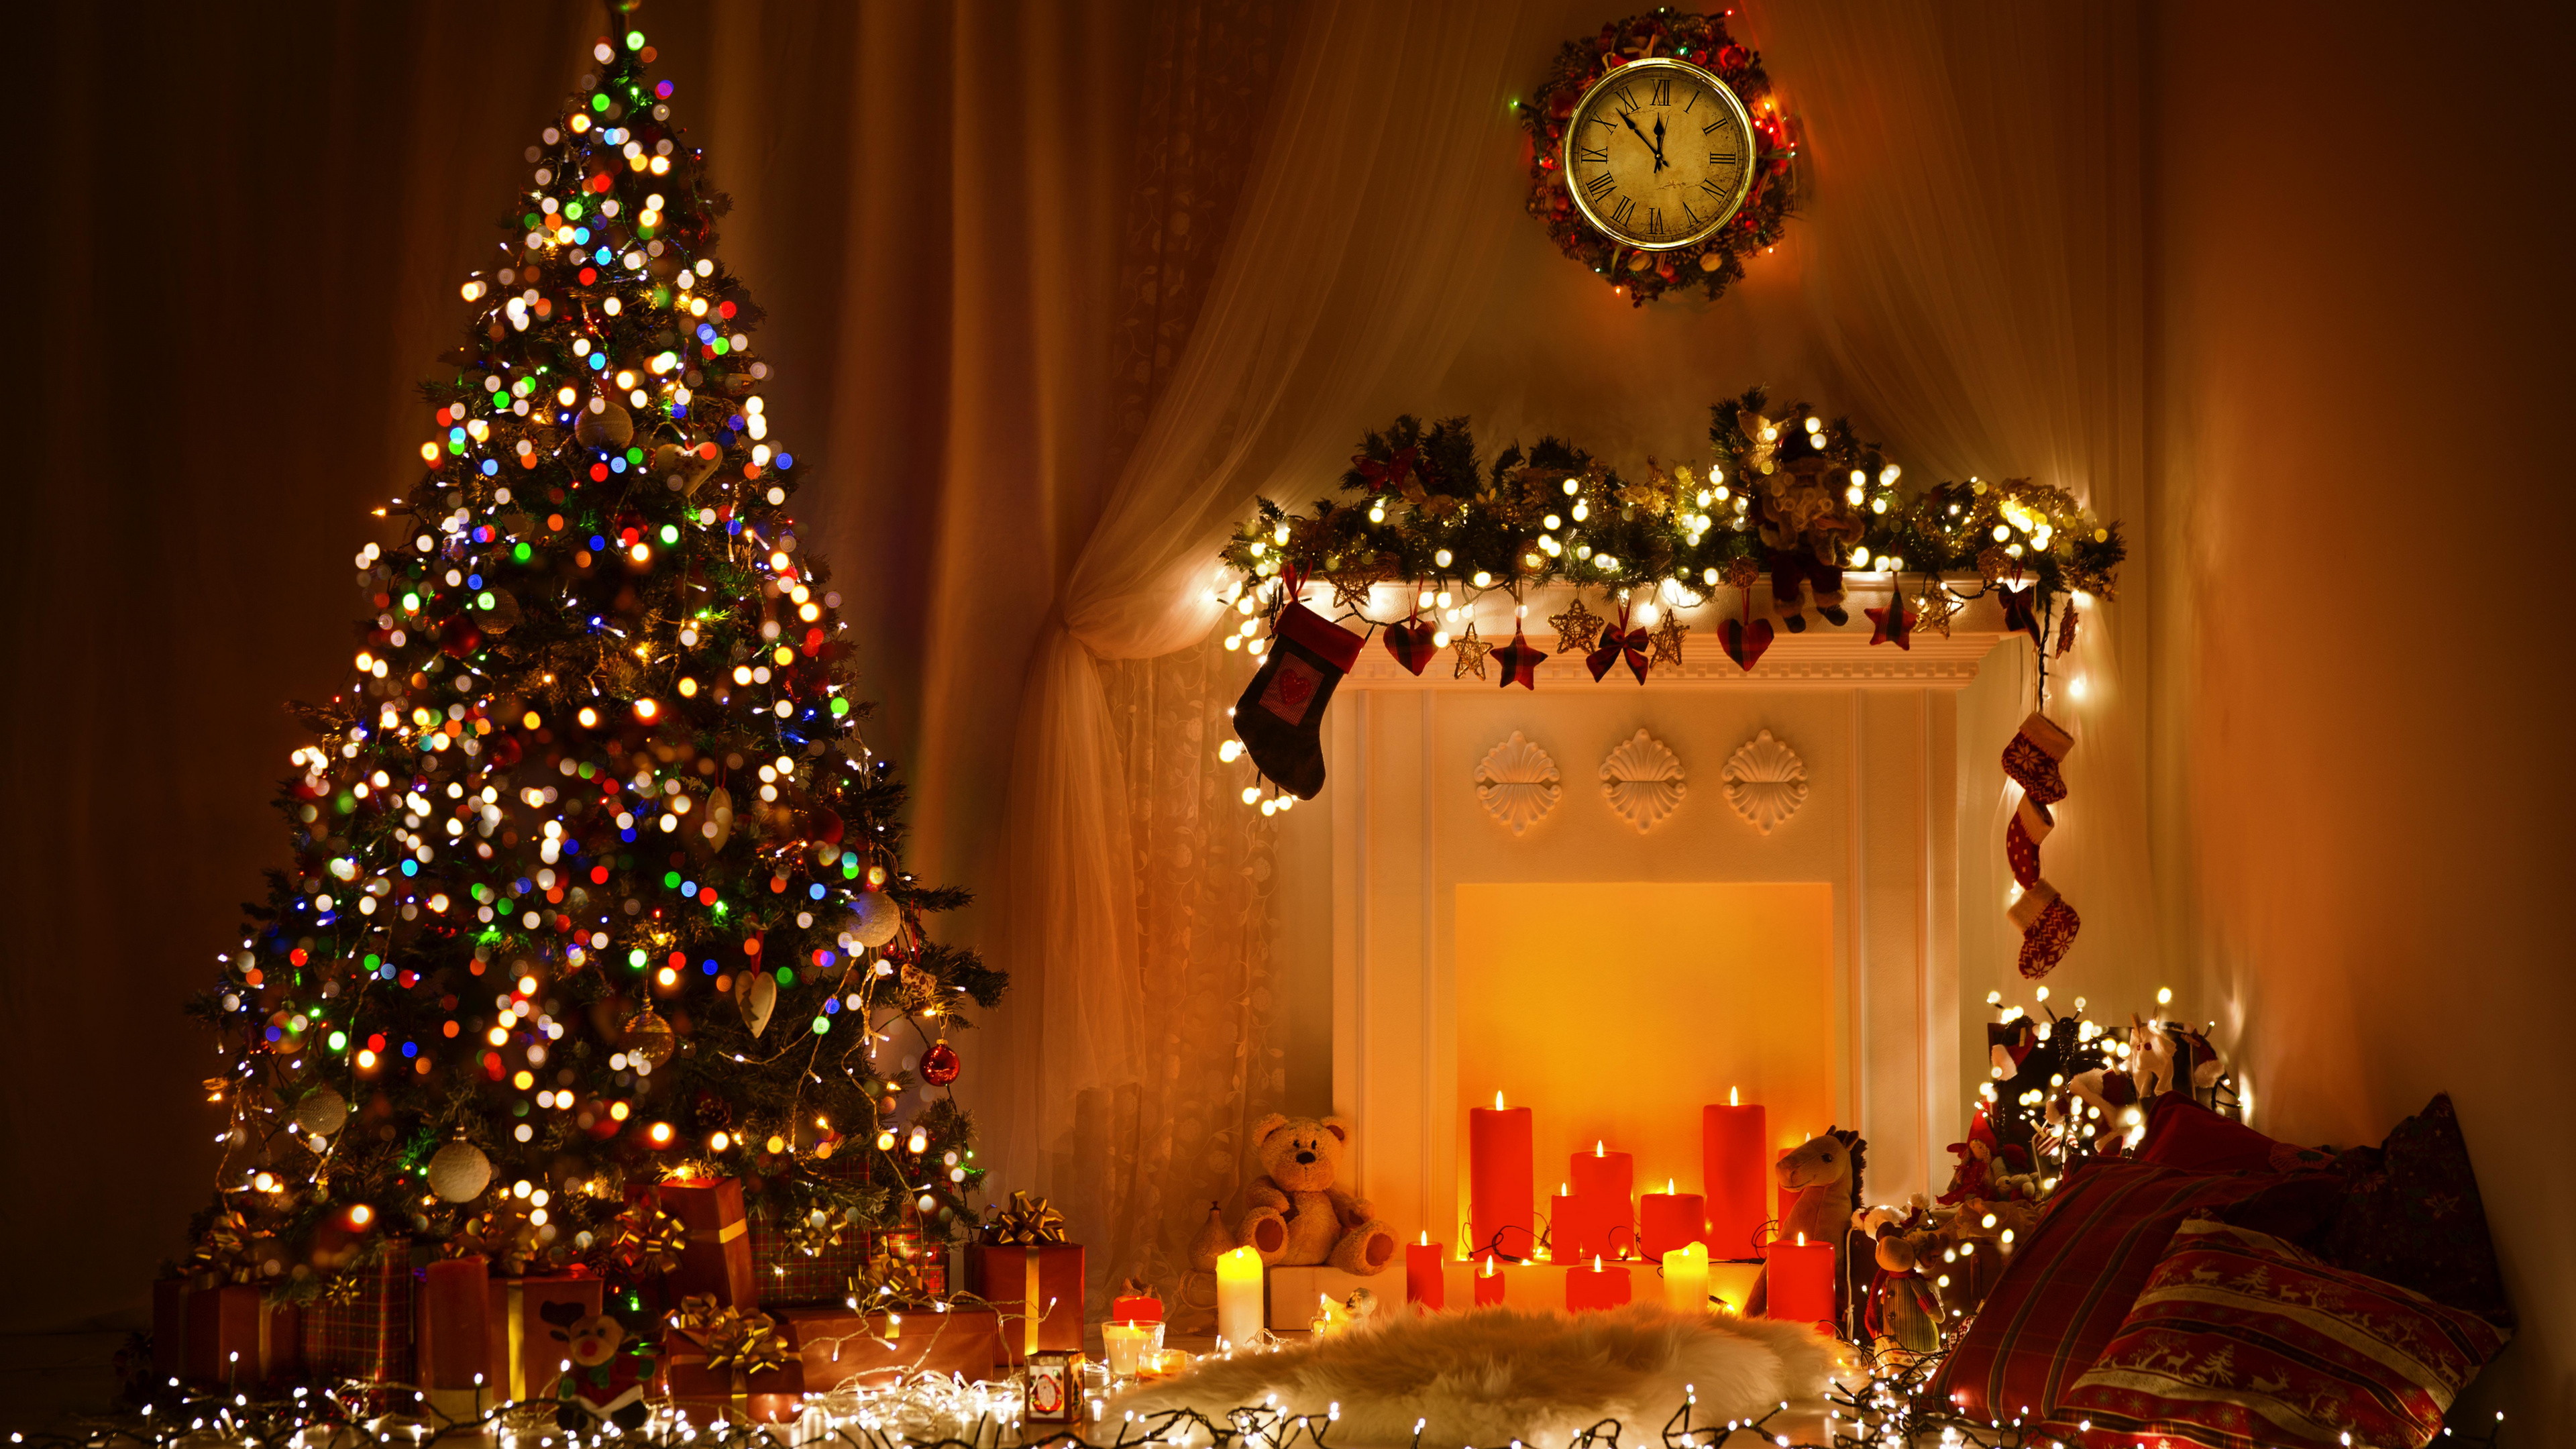 圣诞节那天, 圣诞树, 圣诞彩灯, 圣诞装饰, 假日 壁纸 3840x2160 允许